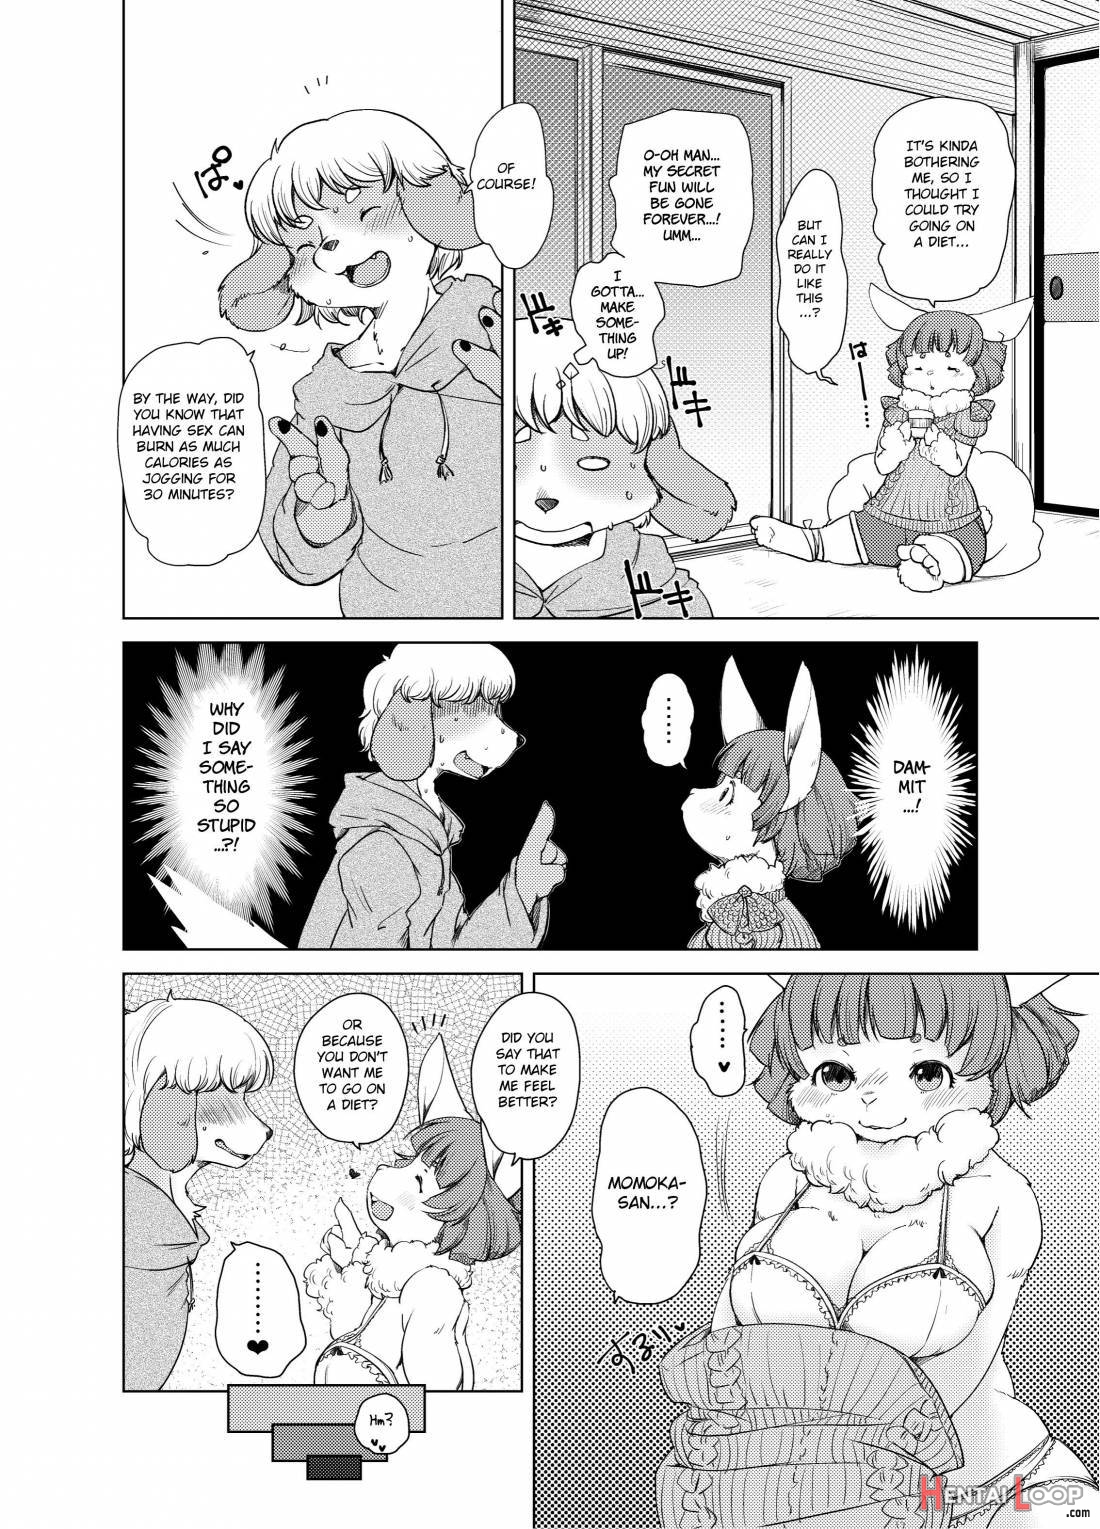 Yojo-han Bunny Part 3 page 38